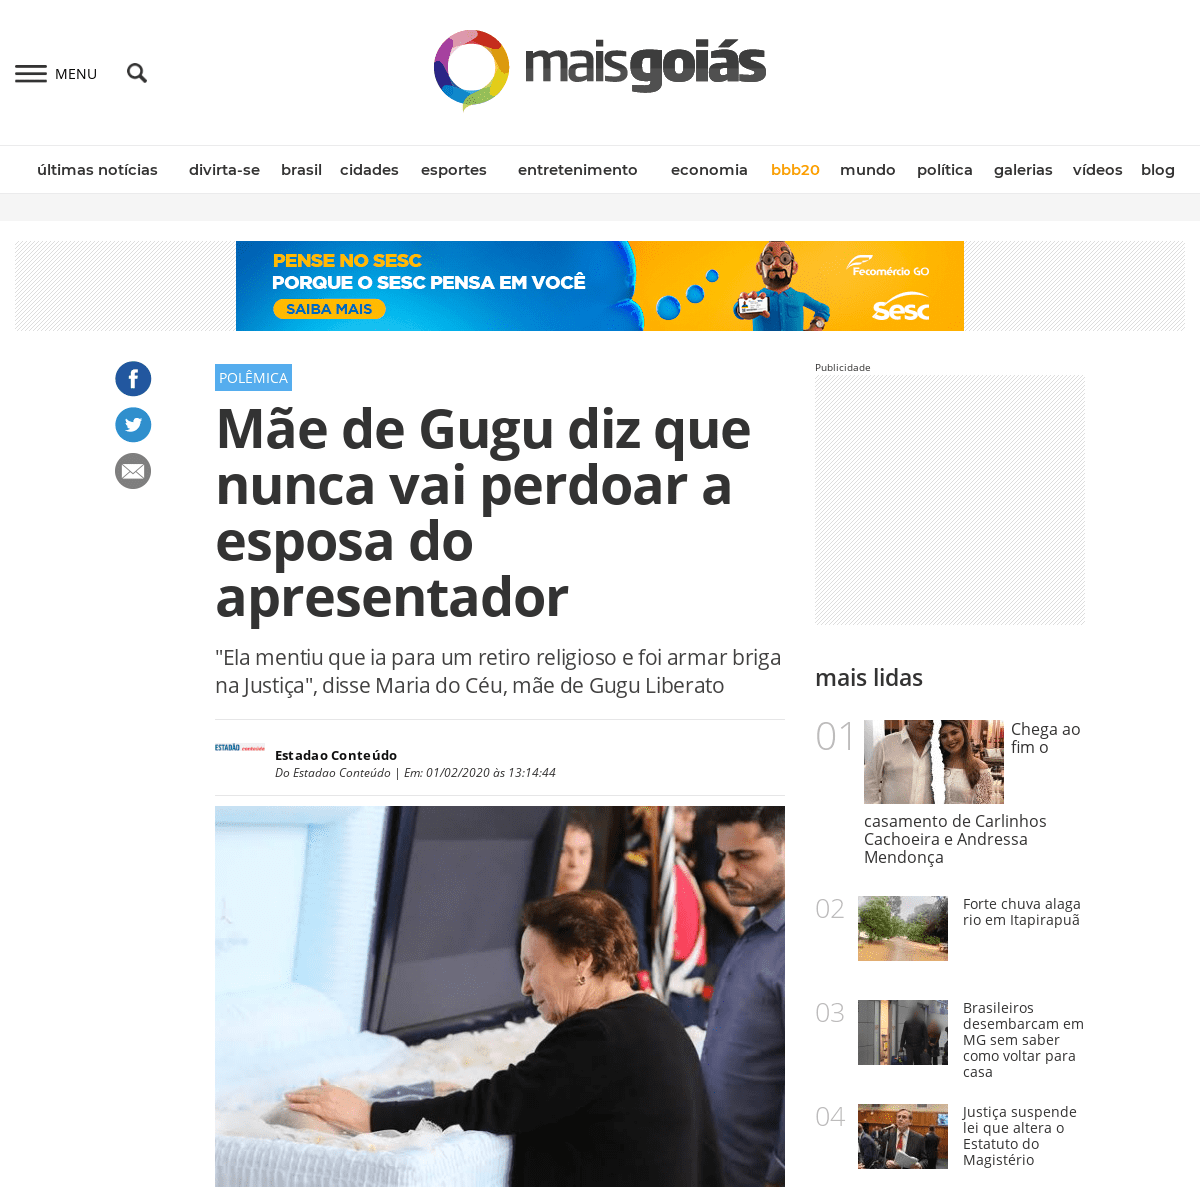 A complete backup of www.emaisgoias.com.br/mae-de-gugu-diz-que-nunca-vai-perdoar-a-esposa-do-apresentador/